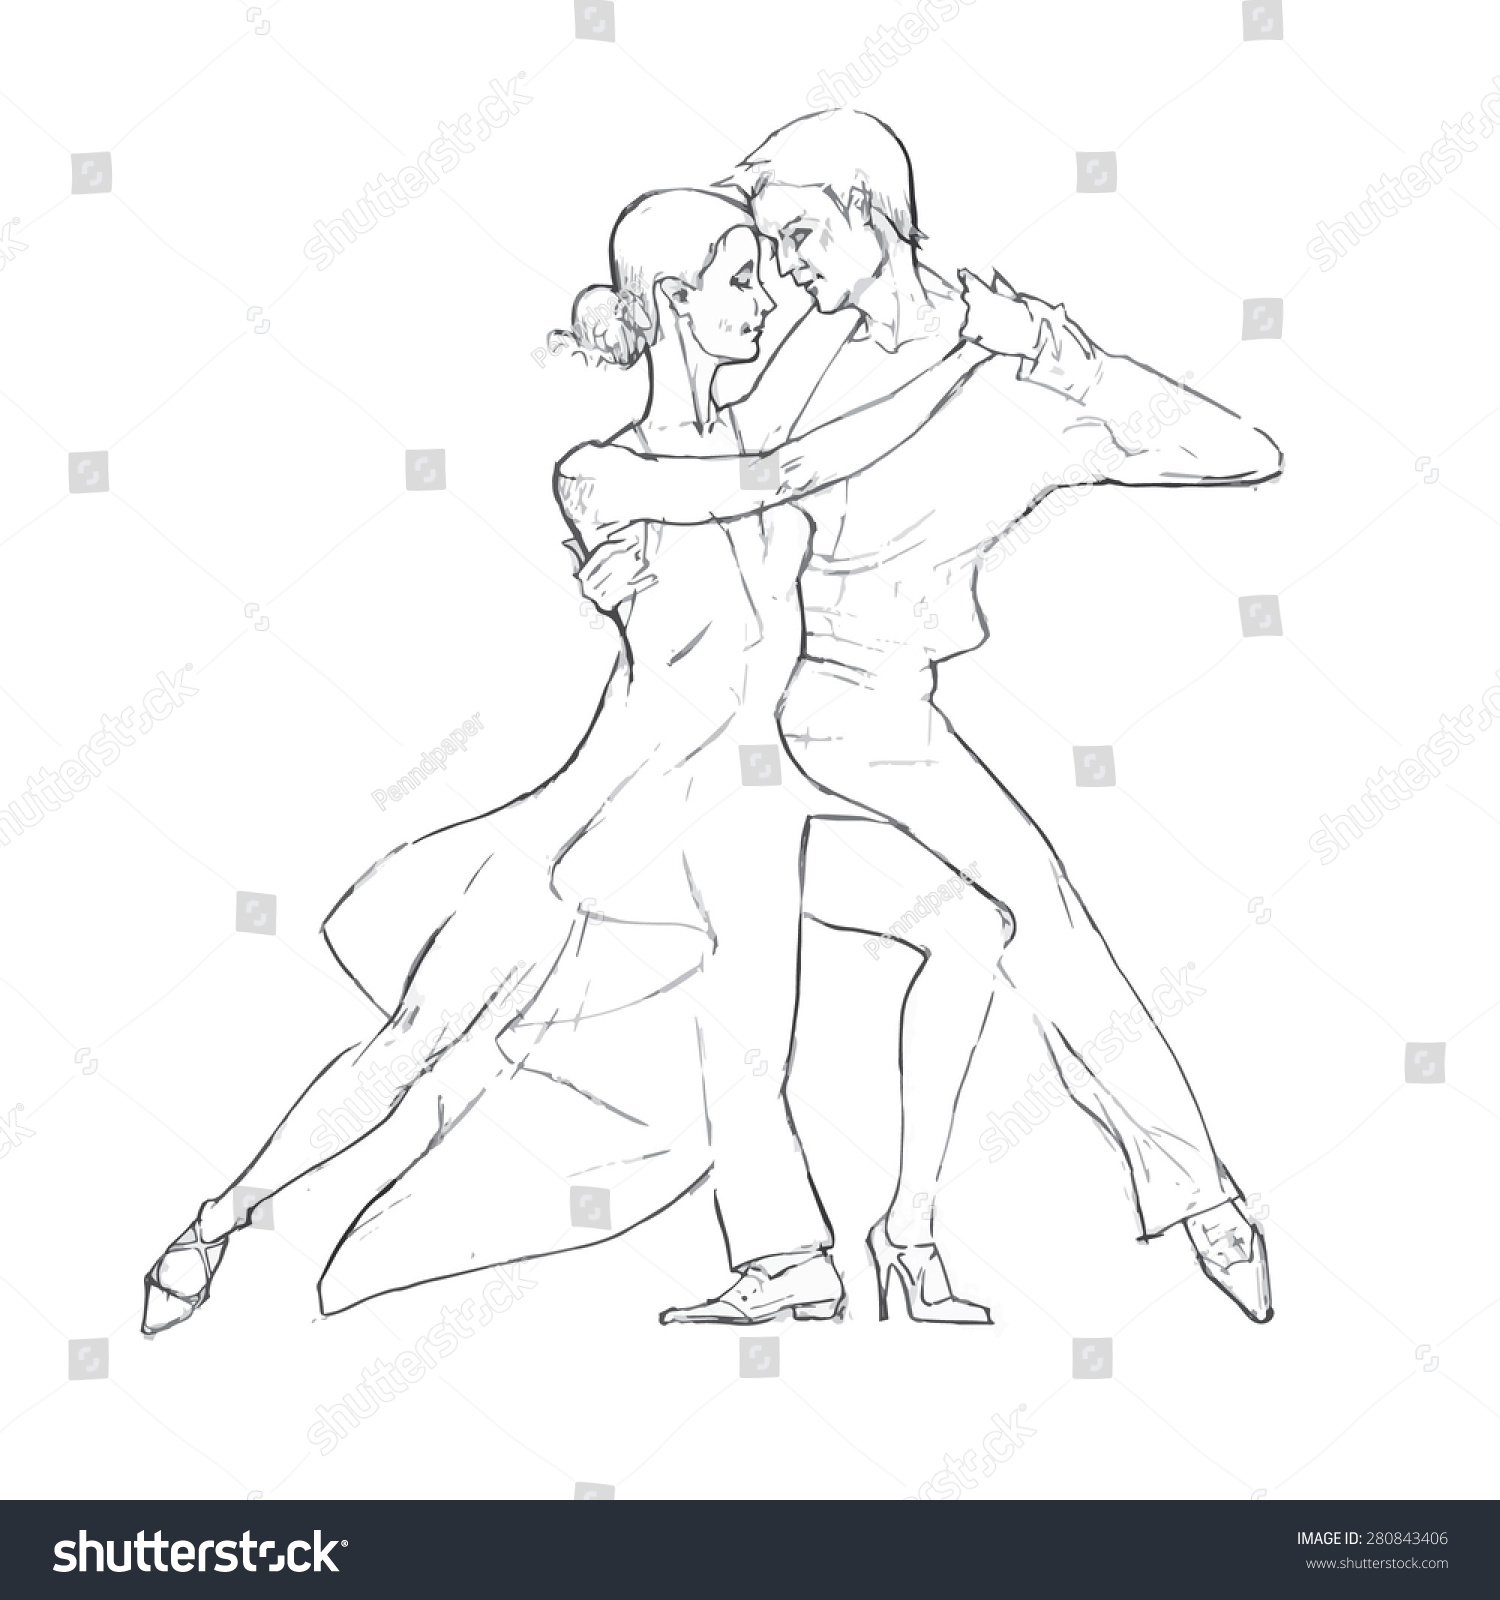 Dancing Couple Vector Sketch Stock Vector 280843406 - Shutterstock